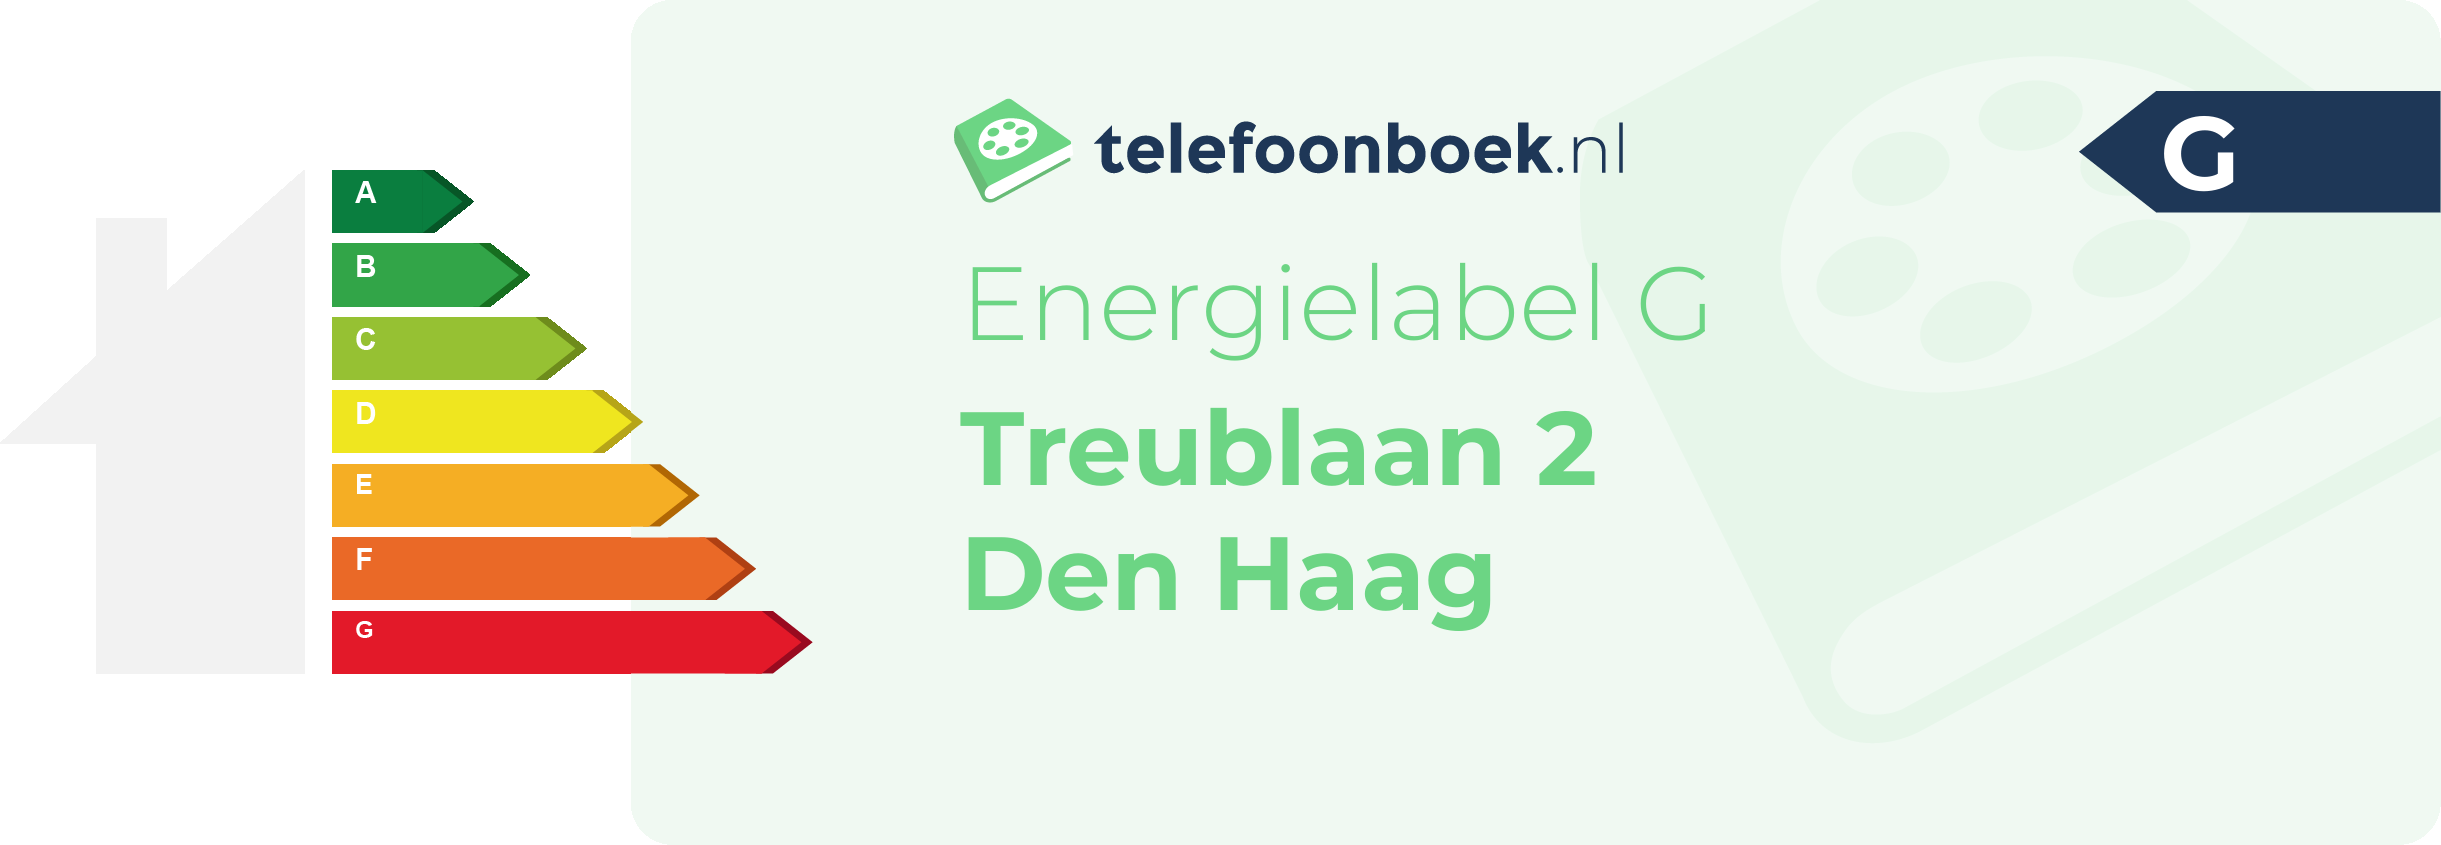 Energielabel Treublaan 2 Den Haag